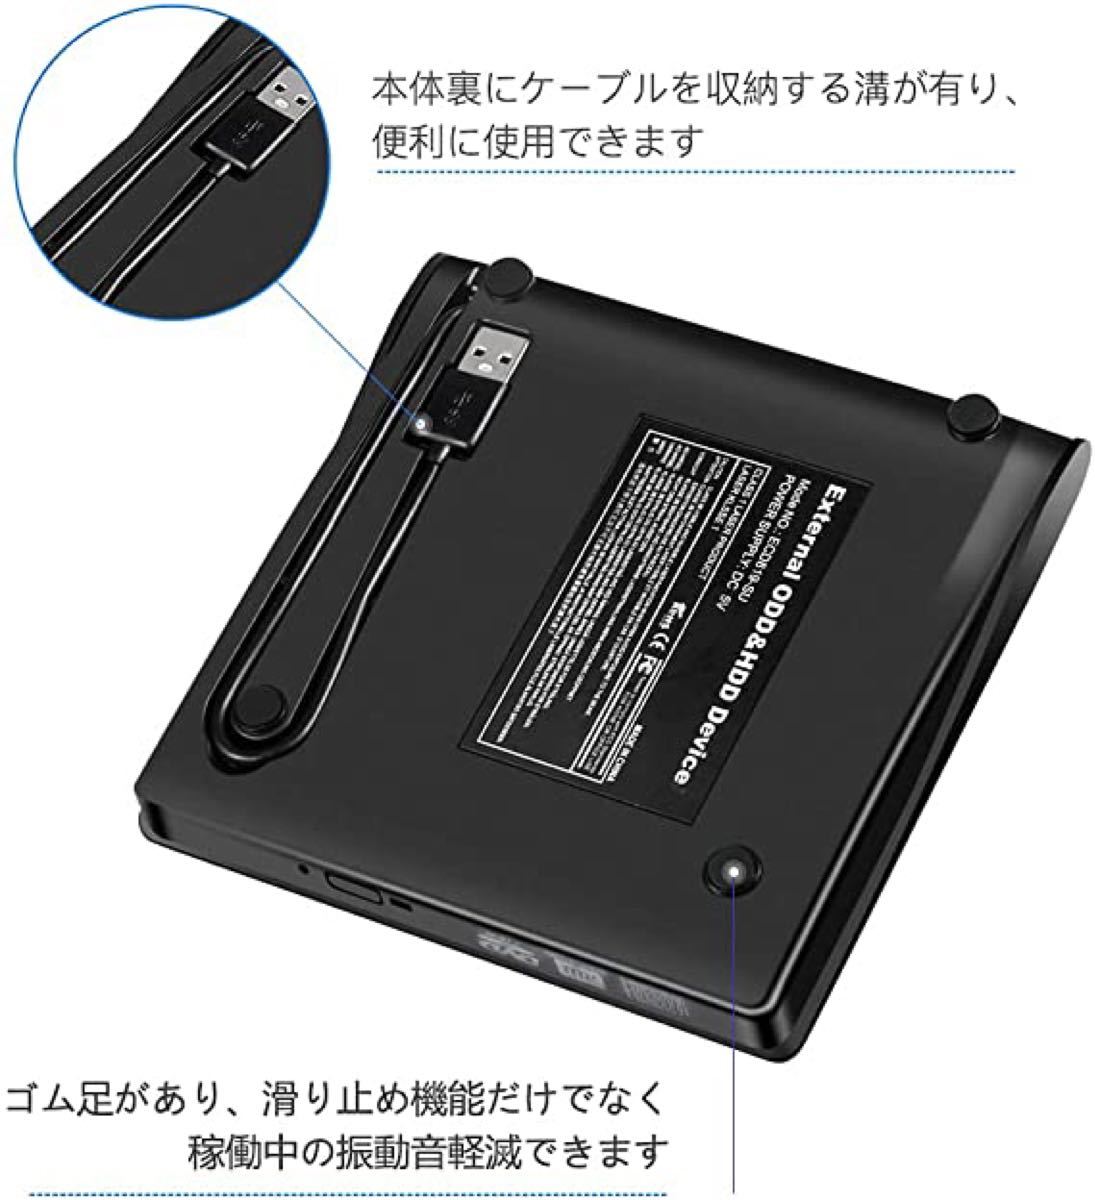 外付けDVDドライブ ブルーレイドライブ ポータブル CD-RW USB3.0 USB 薄型 DVD DVD±RW